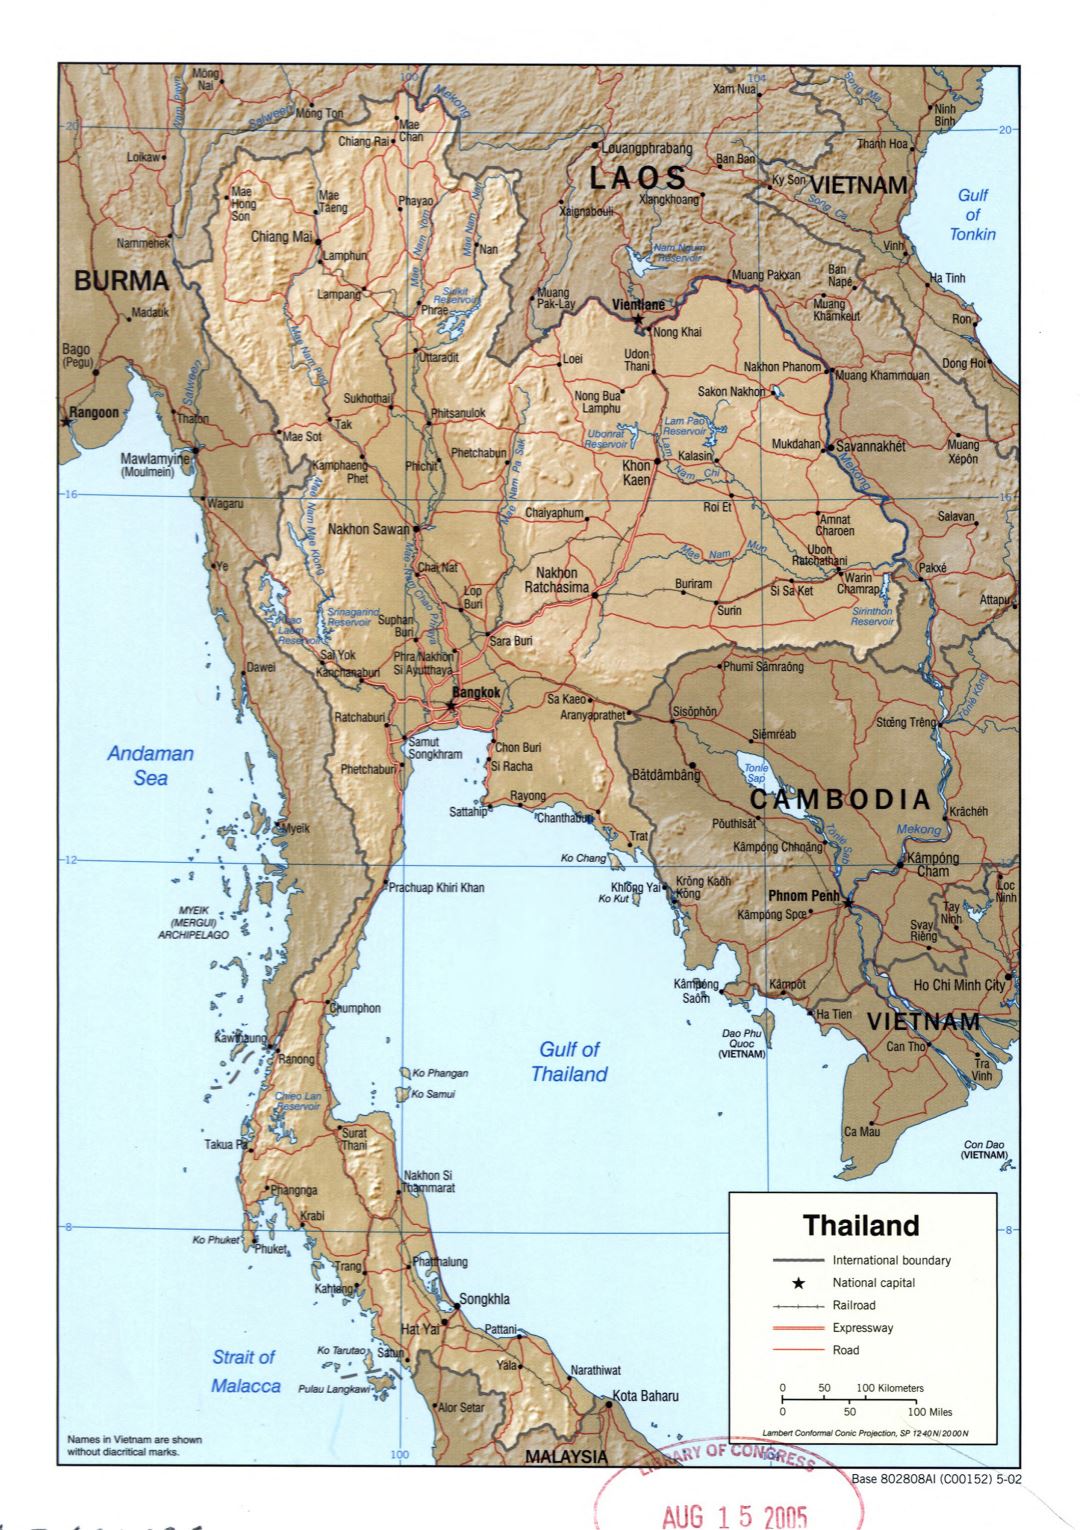 Grande detallado mapa político de Tailandia con relieve, carreteras, ferrocarriles y principales ciudades - 2002